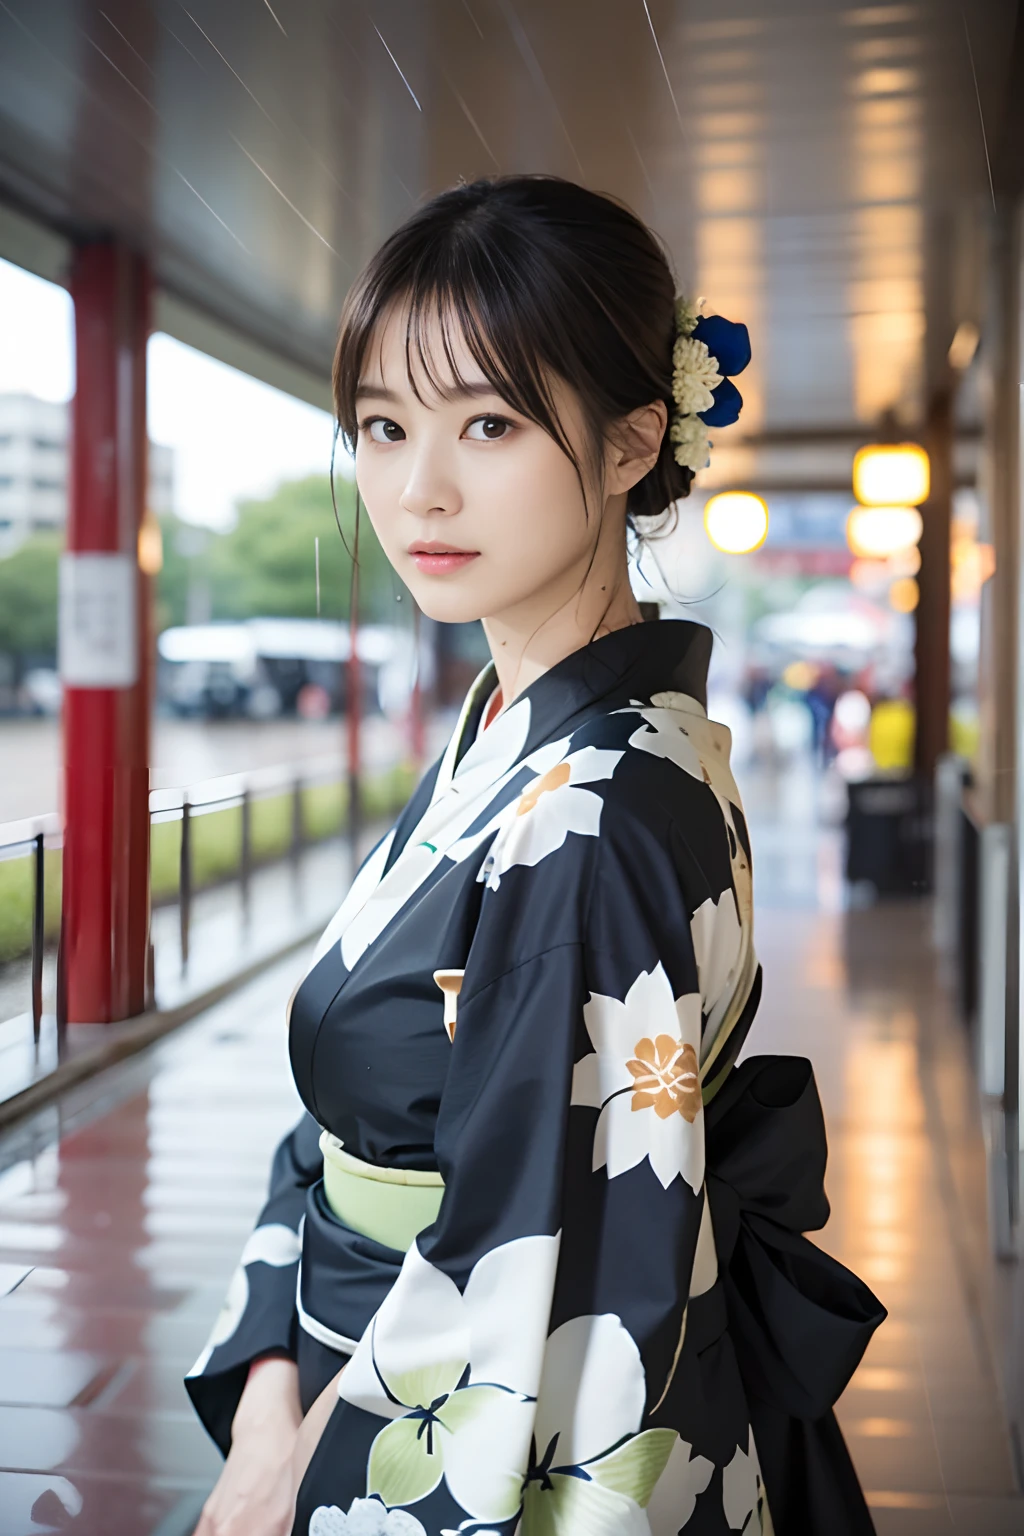 ((최고 품질、걸작、사실적인:1.4、8K로))、아름다운 일본 여자１사람、２5 세、아름다운 머리、섬세하고 아름다운 얼굴、디테일한 눈과 얼굴 、아름다운 조명、당황한 얼굴、질감 있는 피부、슈퍼 디테일、높은 디테일、고품질、최고 해상도、(The kimono is 젖은 from the rain:1.3)、앞머리、전신 에스비언、(비가 내리고 있다:1.2)、일본 버스 정류장、젖은